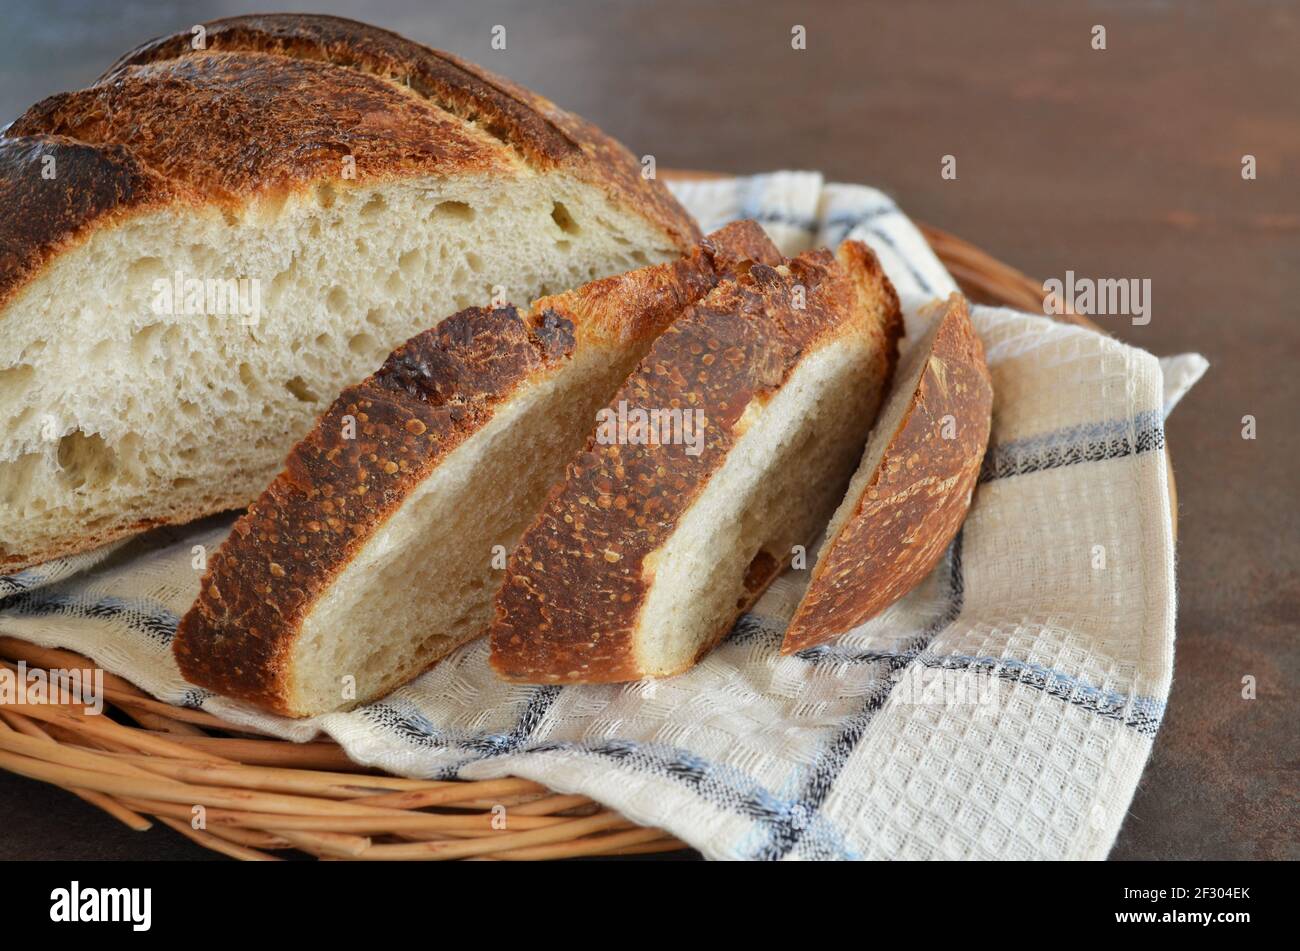 Nahaufnahme von hausgemachtem Brot in Scheiben mit einer knusprigen Kruste auf einem Küchentuch, selektiver Fokus Stockfoto